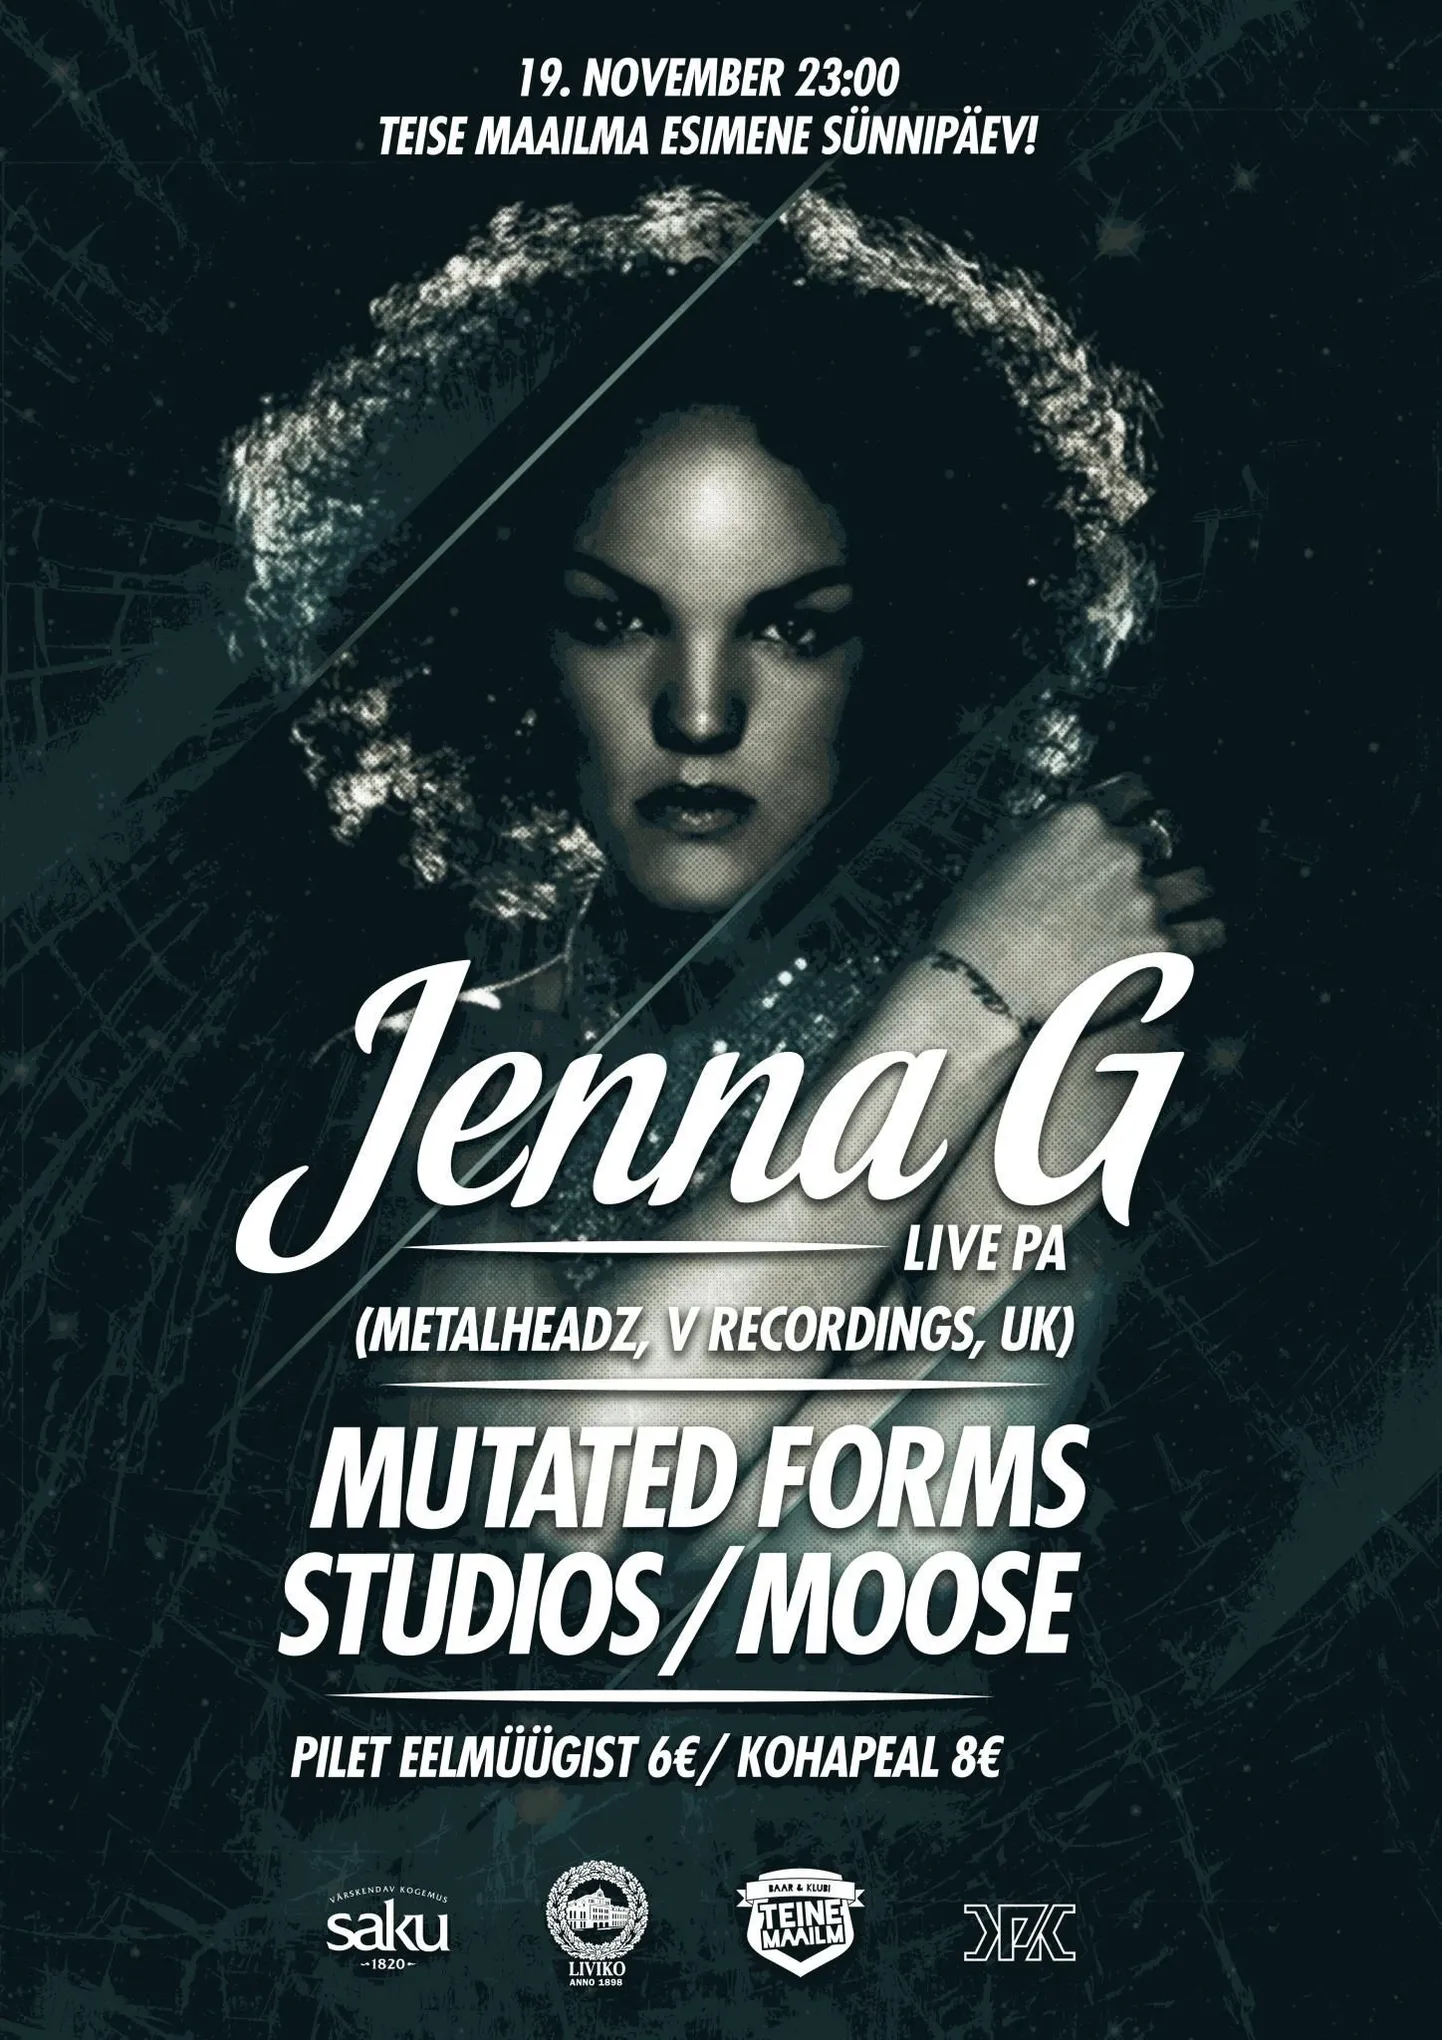 Laupäeval, 19. novembril esineb Tartu menukaimas pidutsemiskohas Suurbritanniast pärit vokalist Jenna G!